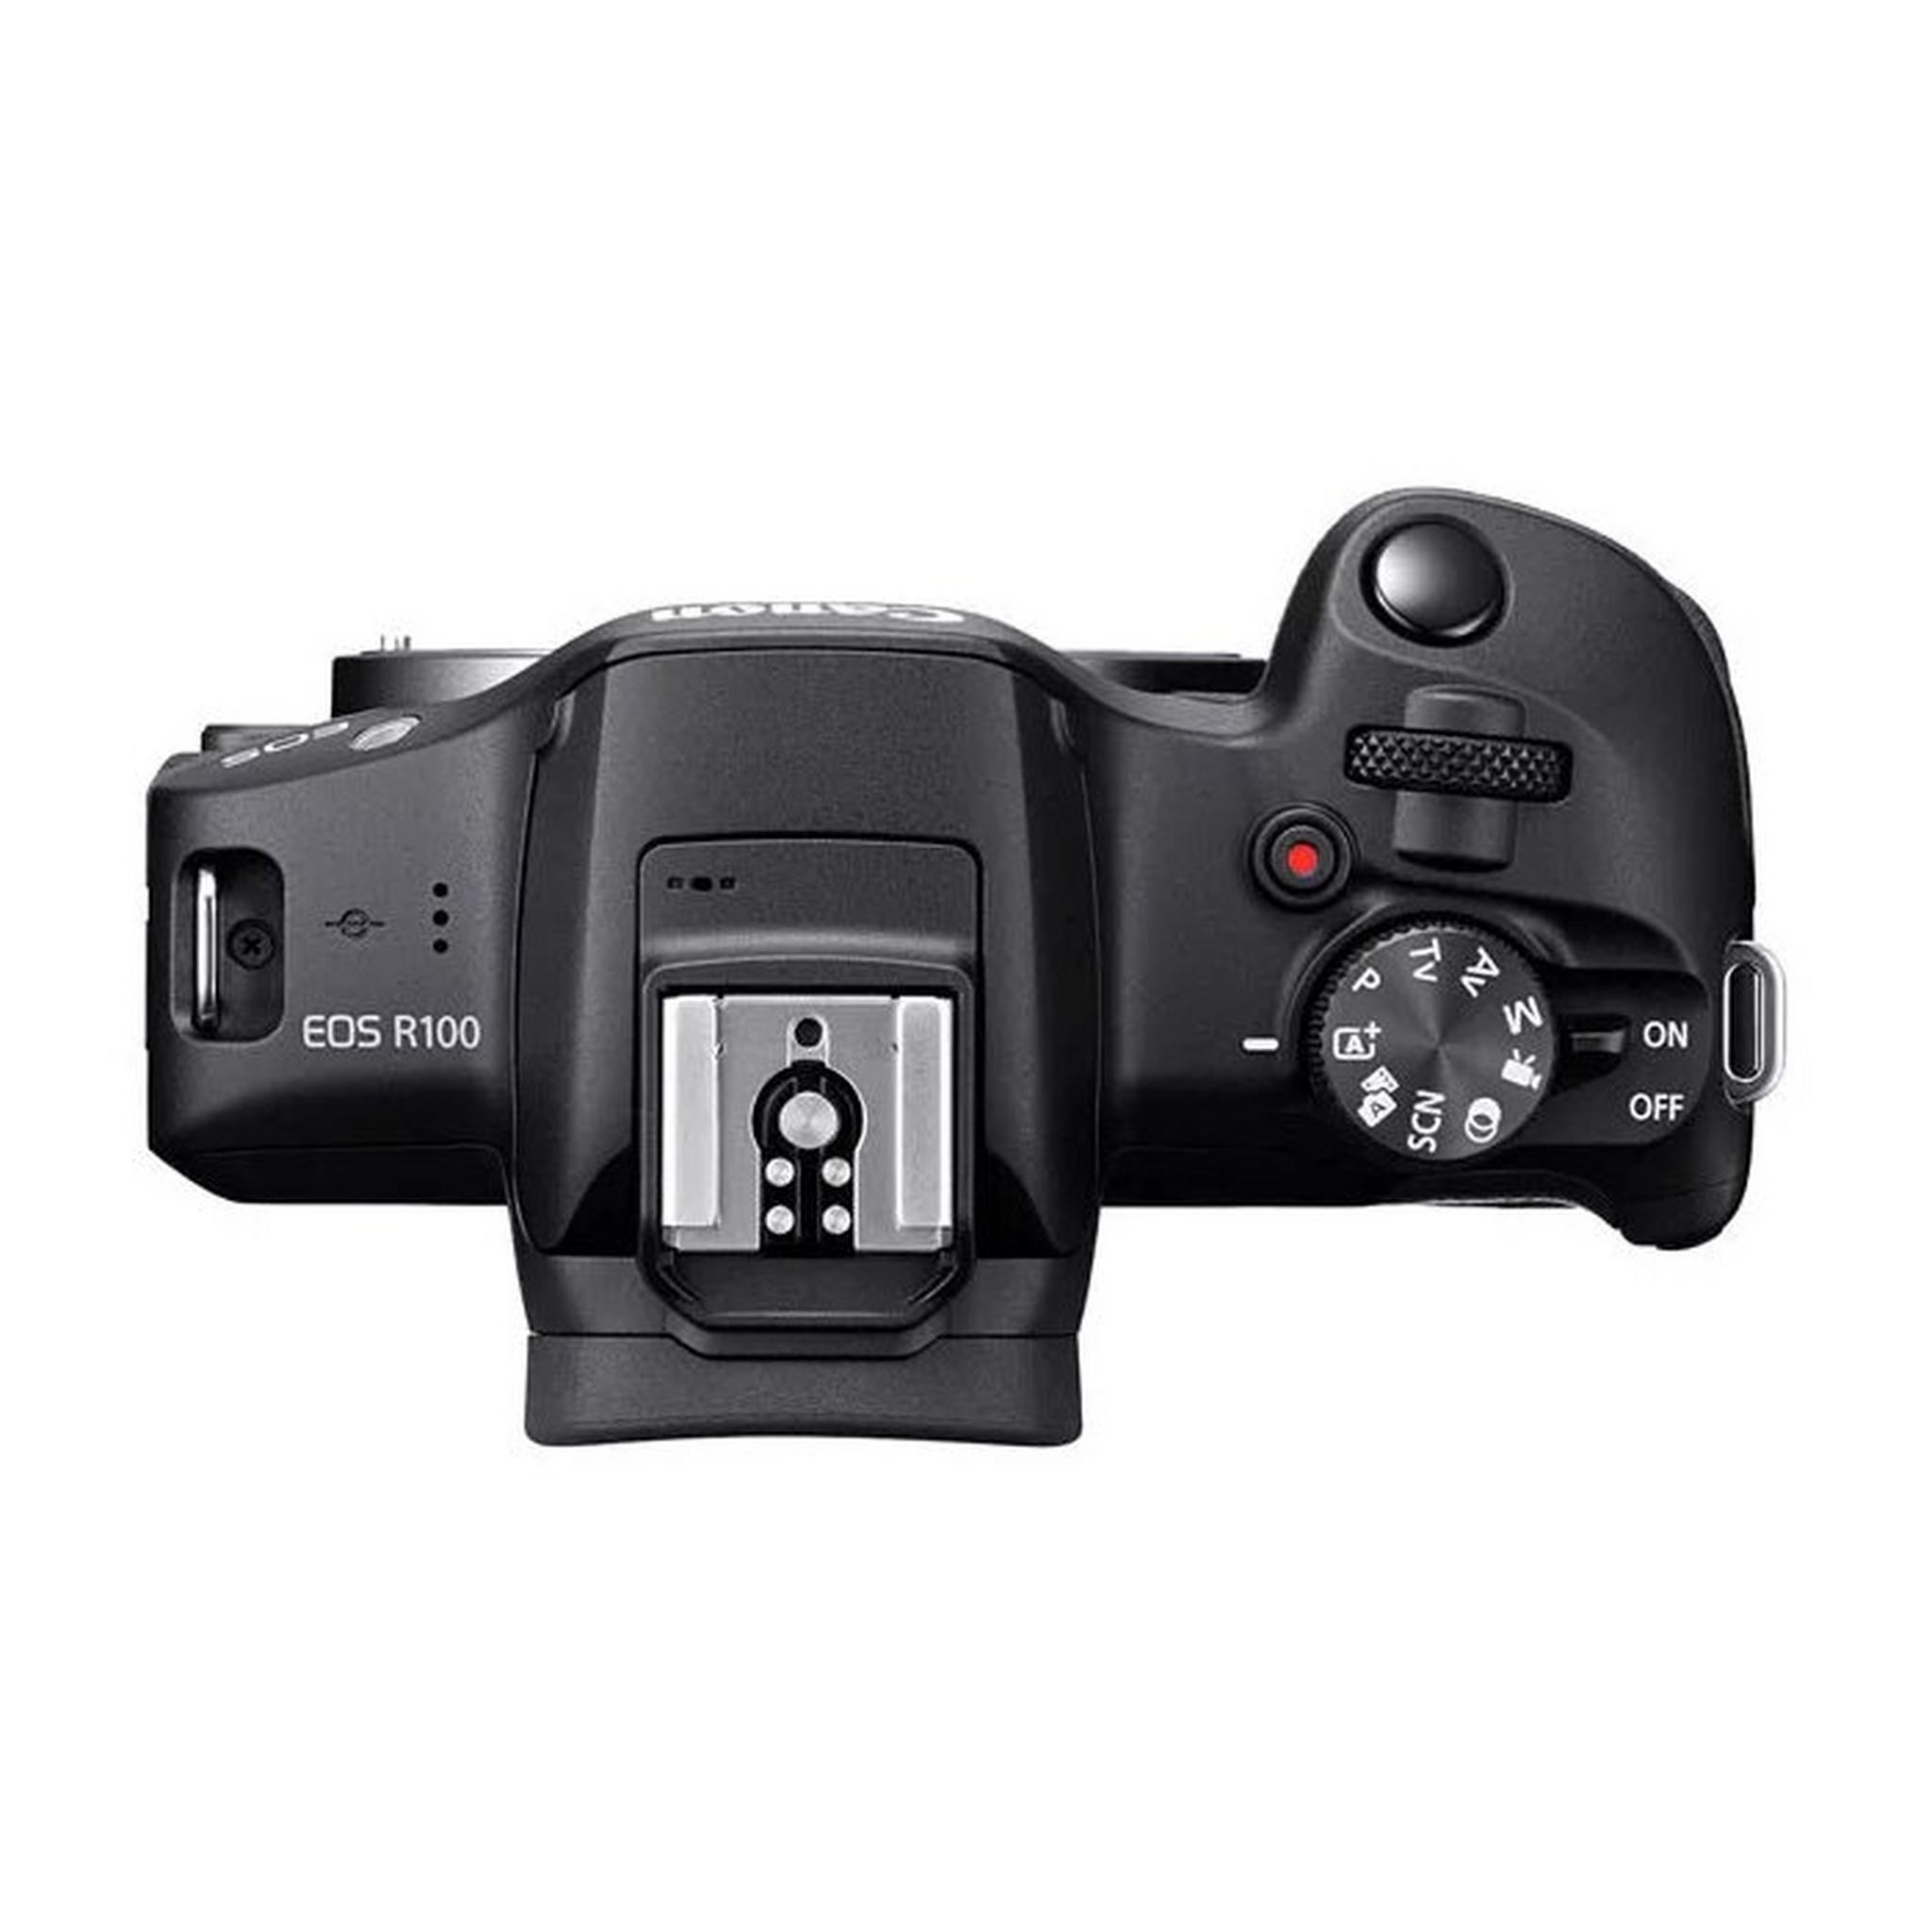 كاميرا إي أوه أس أر100 بدون مرآة مع طقم عدسات 18-45 ملم و55-210 ملم من كانون، 6052C023AA - أسود